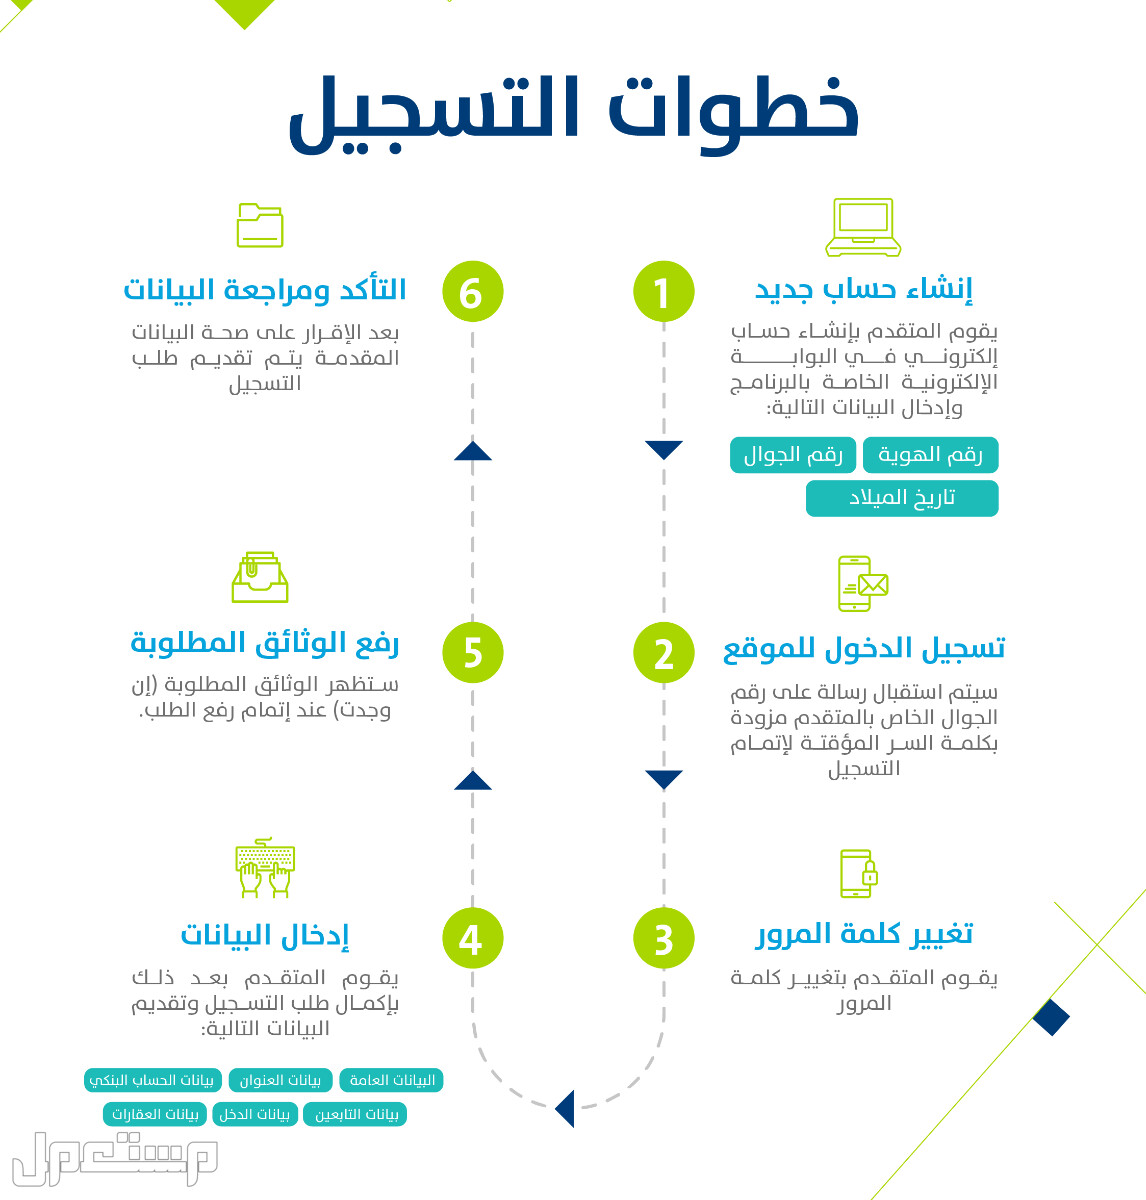 حساب المواطن: تعرف على حقيقة تأثير وثيقة العمل الحر على الدعم في الكويت